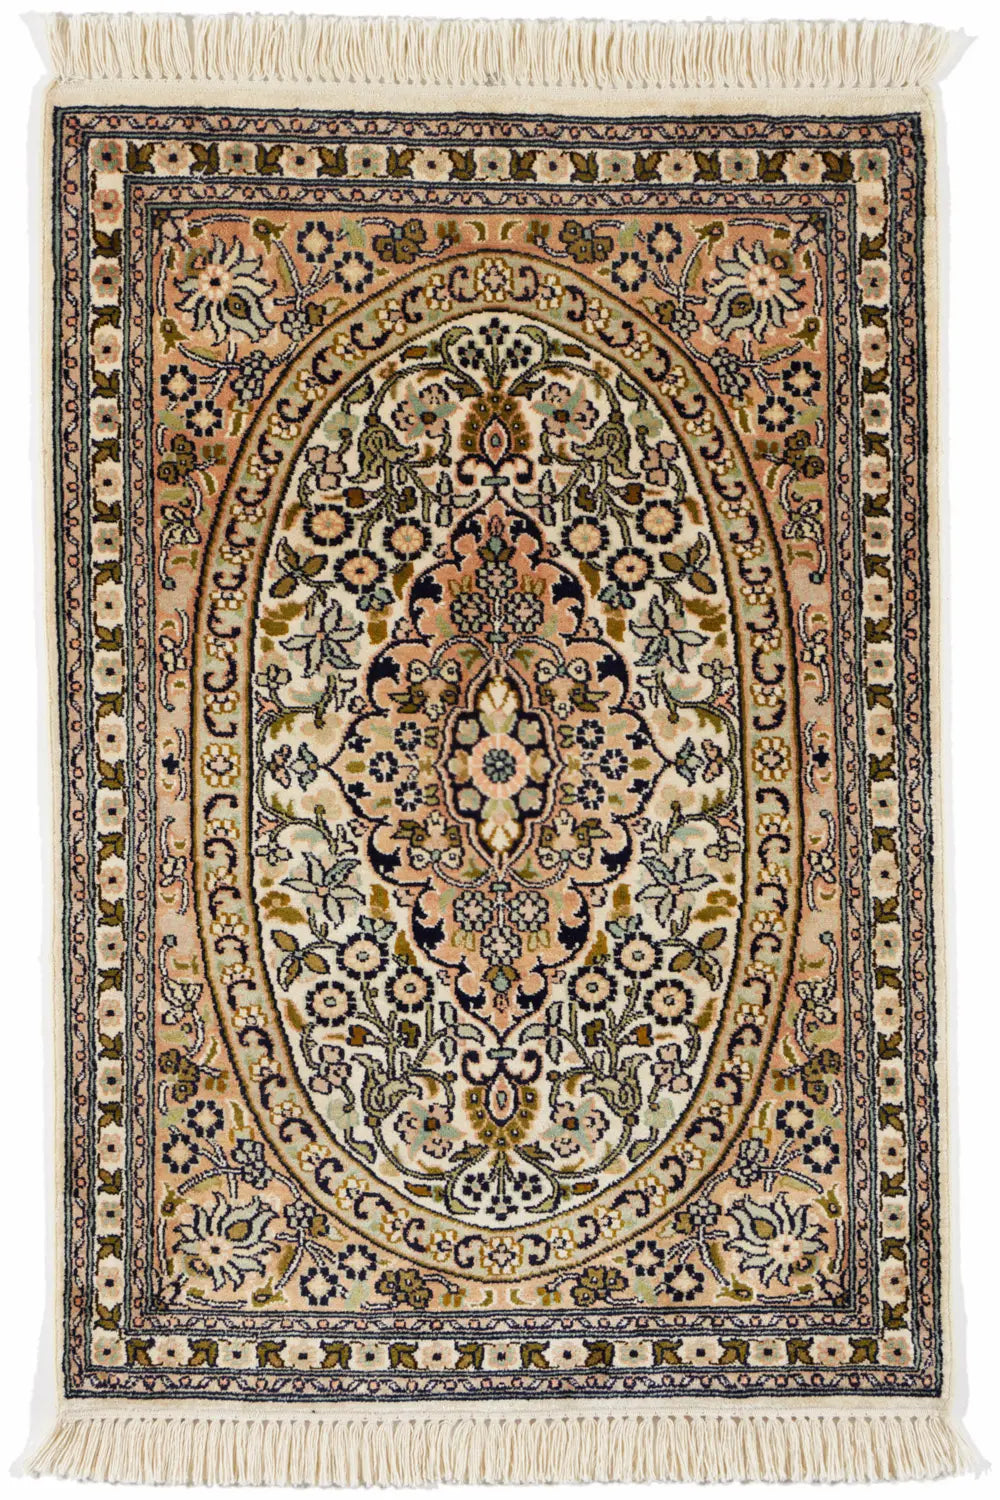 カシミール地方産のシルク手織り絨毯。黄色味を帯びたヴィンテージライクなデザイン